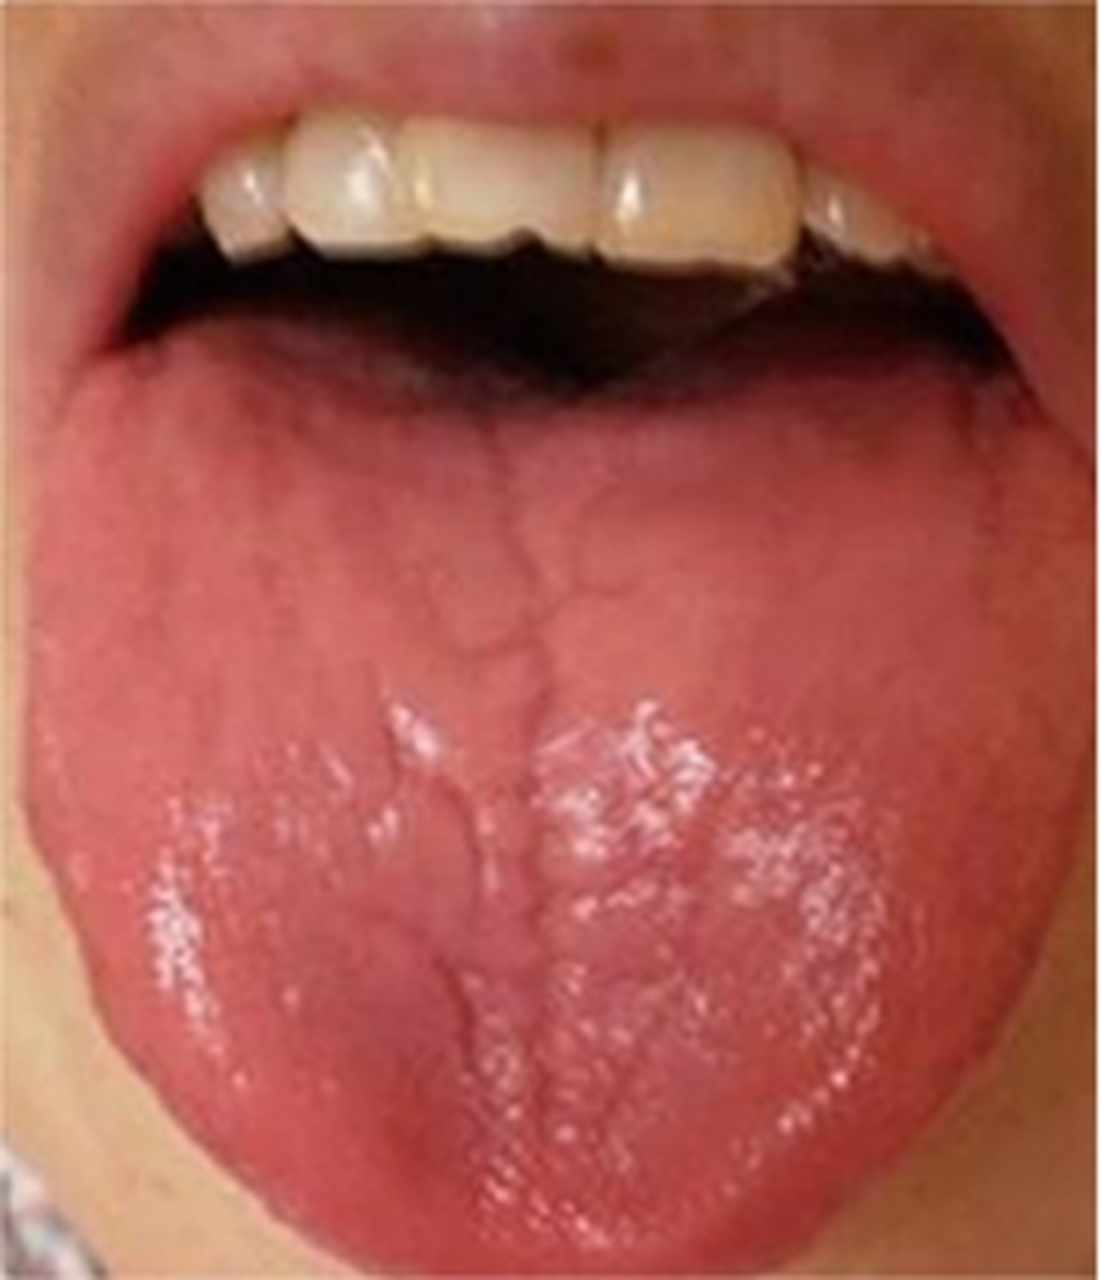 舌红少苔正常图片大全图片